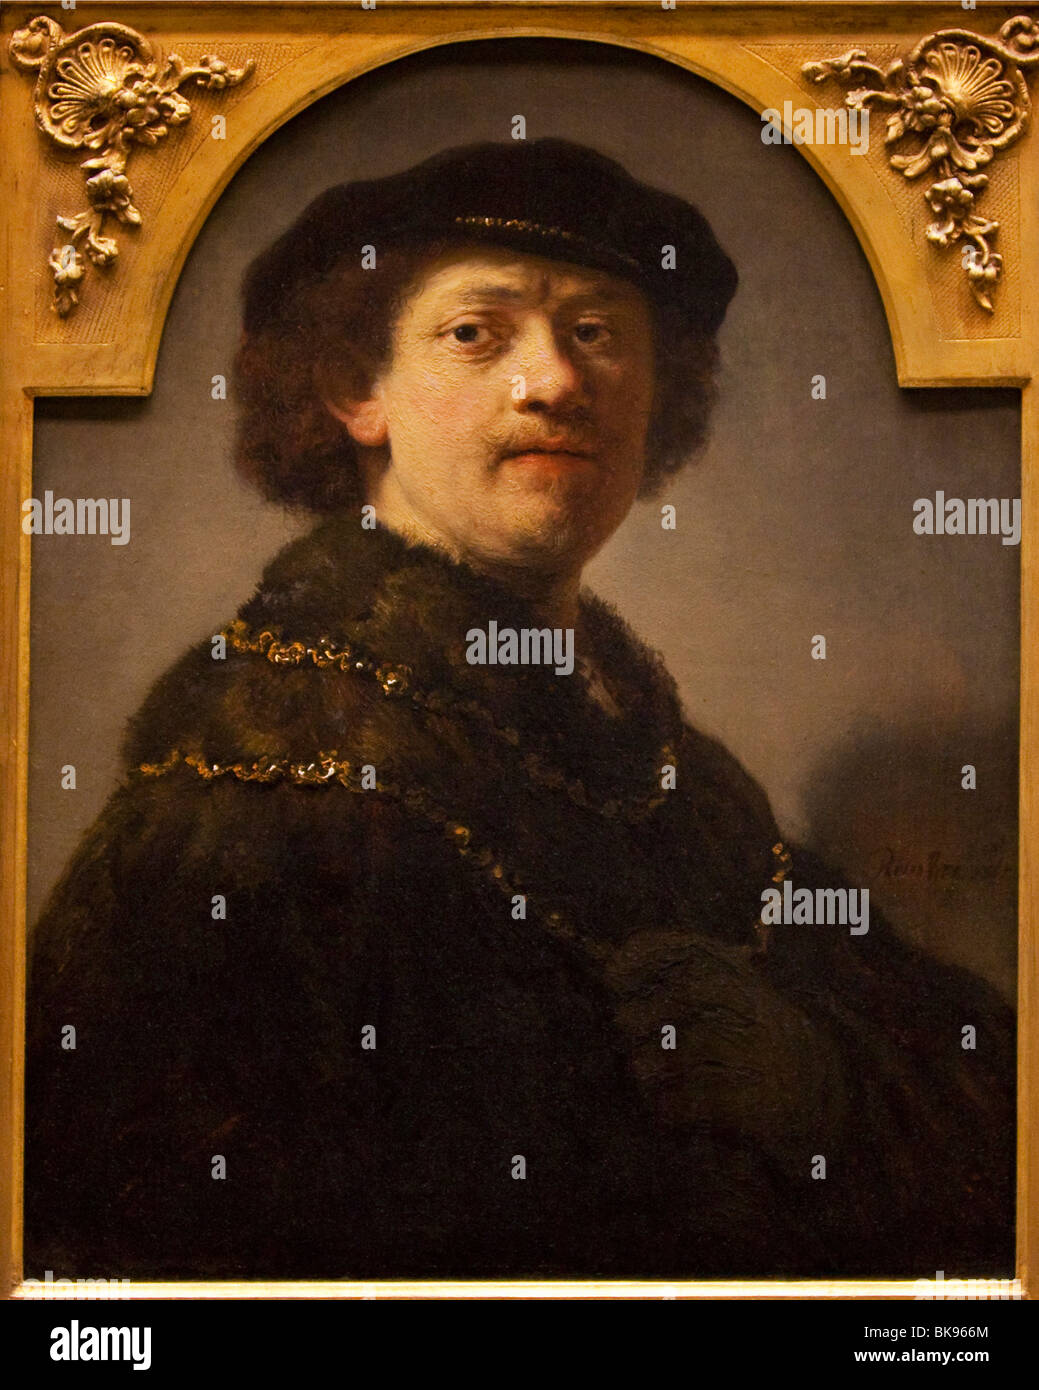 Selbstporträt von Rembrandt van Rijn, 1637, Wallace Collection, London, Vereinigtes Königreich Stockfoto